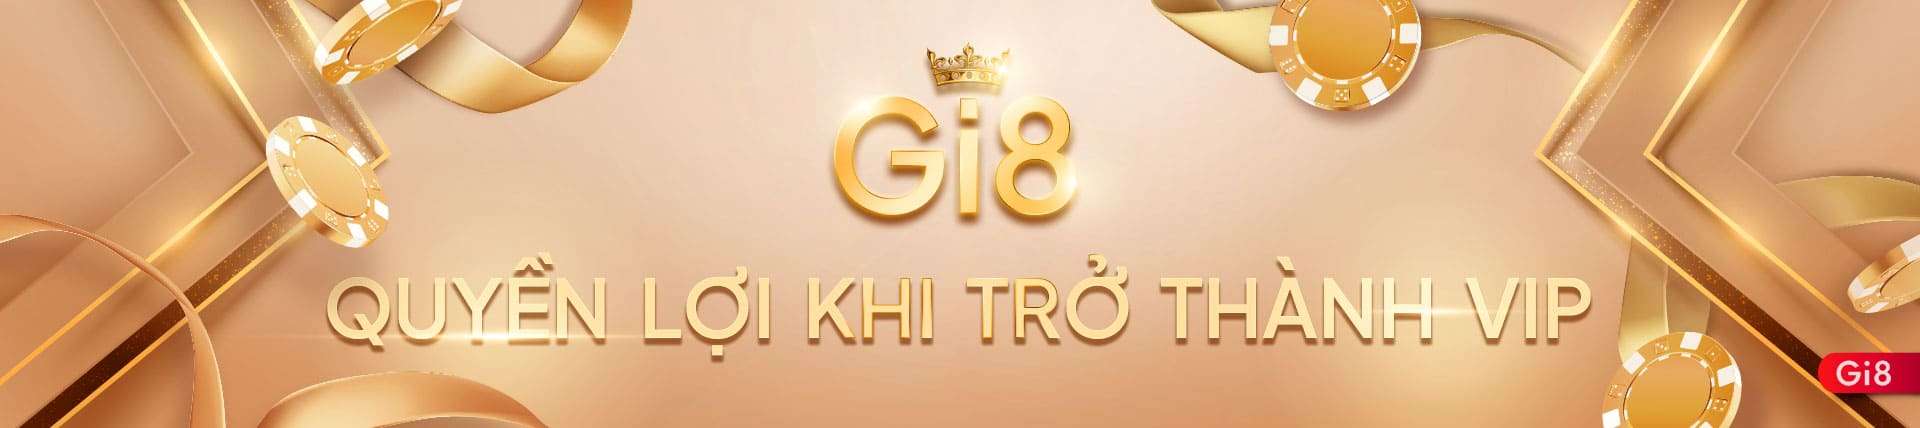 GI8 - QUYỀN LỢI KHI TRỞ THÀNH VIP